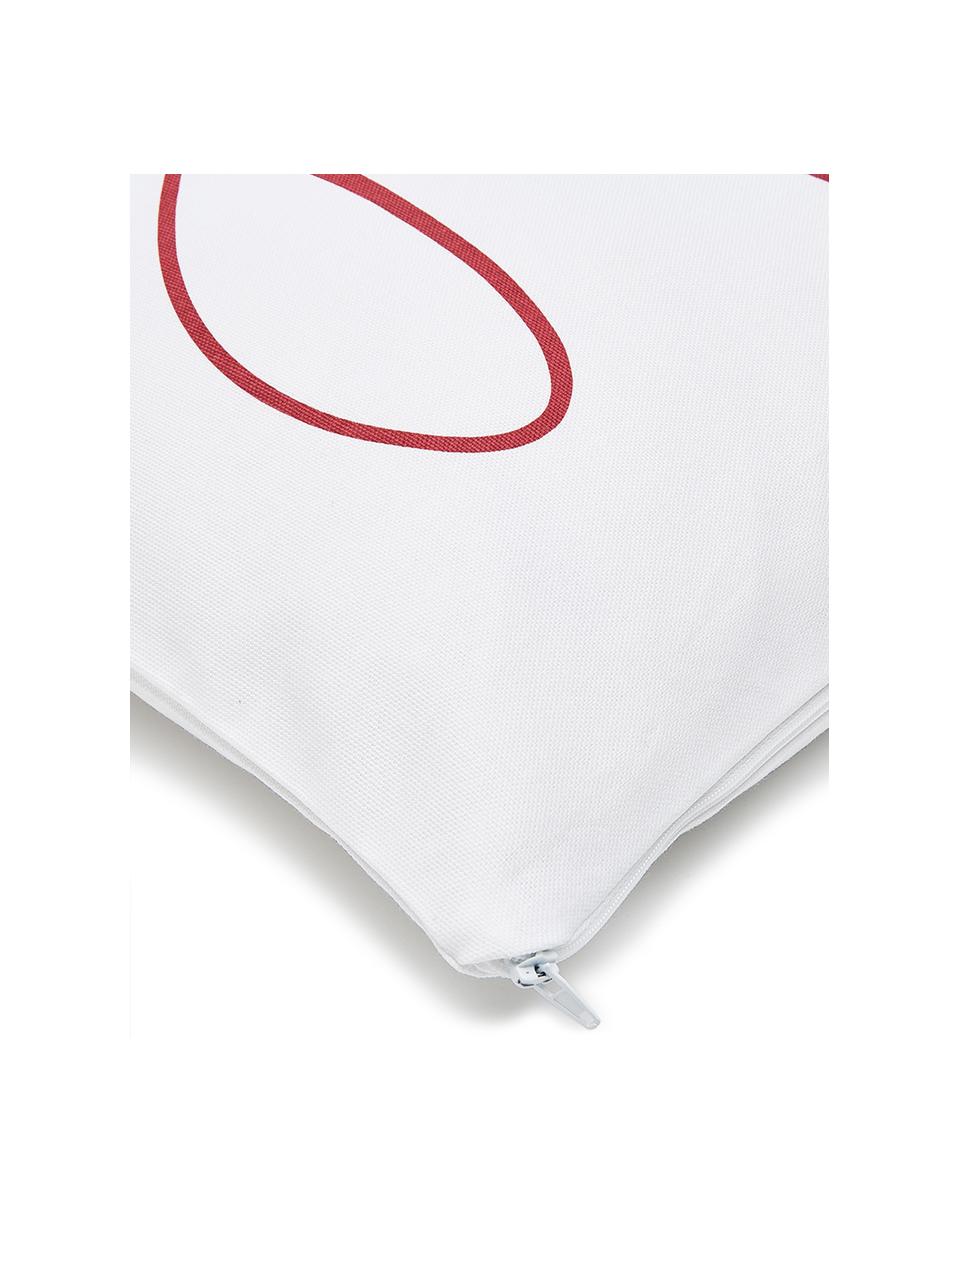 Poszewka na poduszkę Joy, Bawełna, Biały, czerwony, S 40 x D 40 cm